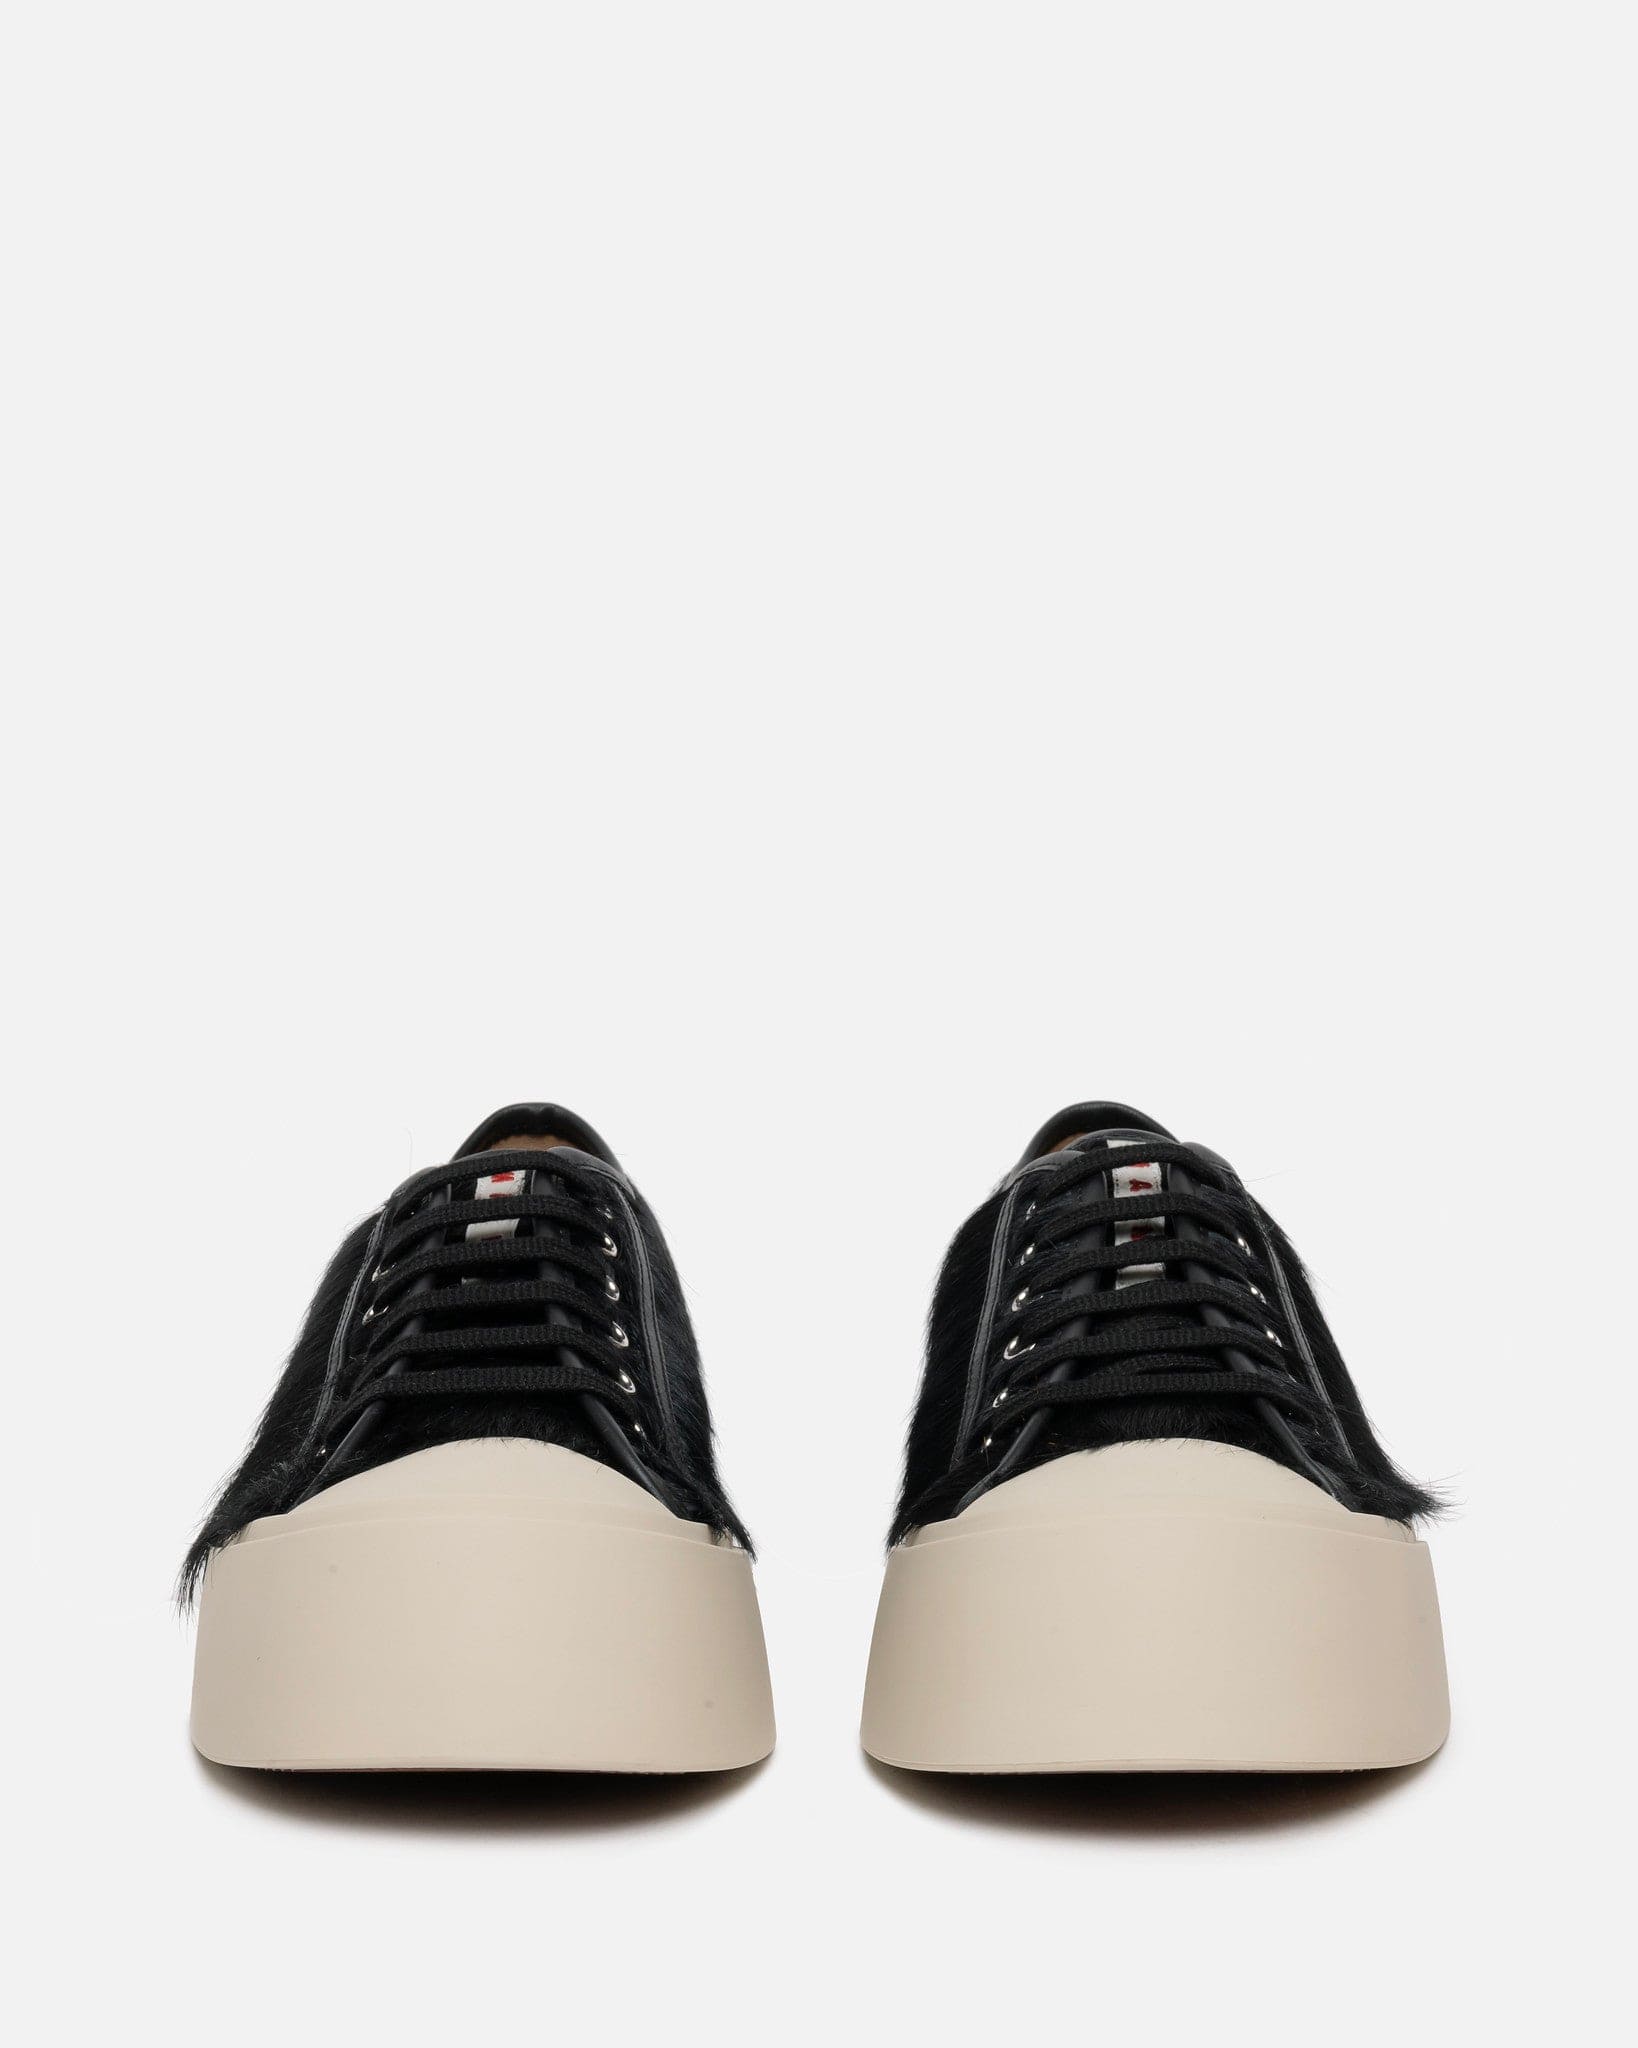 Marni Men's Shoes Long Calf-Hair Pablo Sneaker in Black